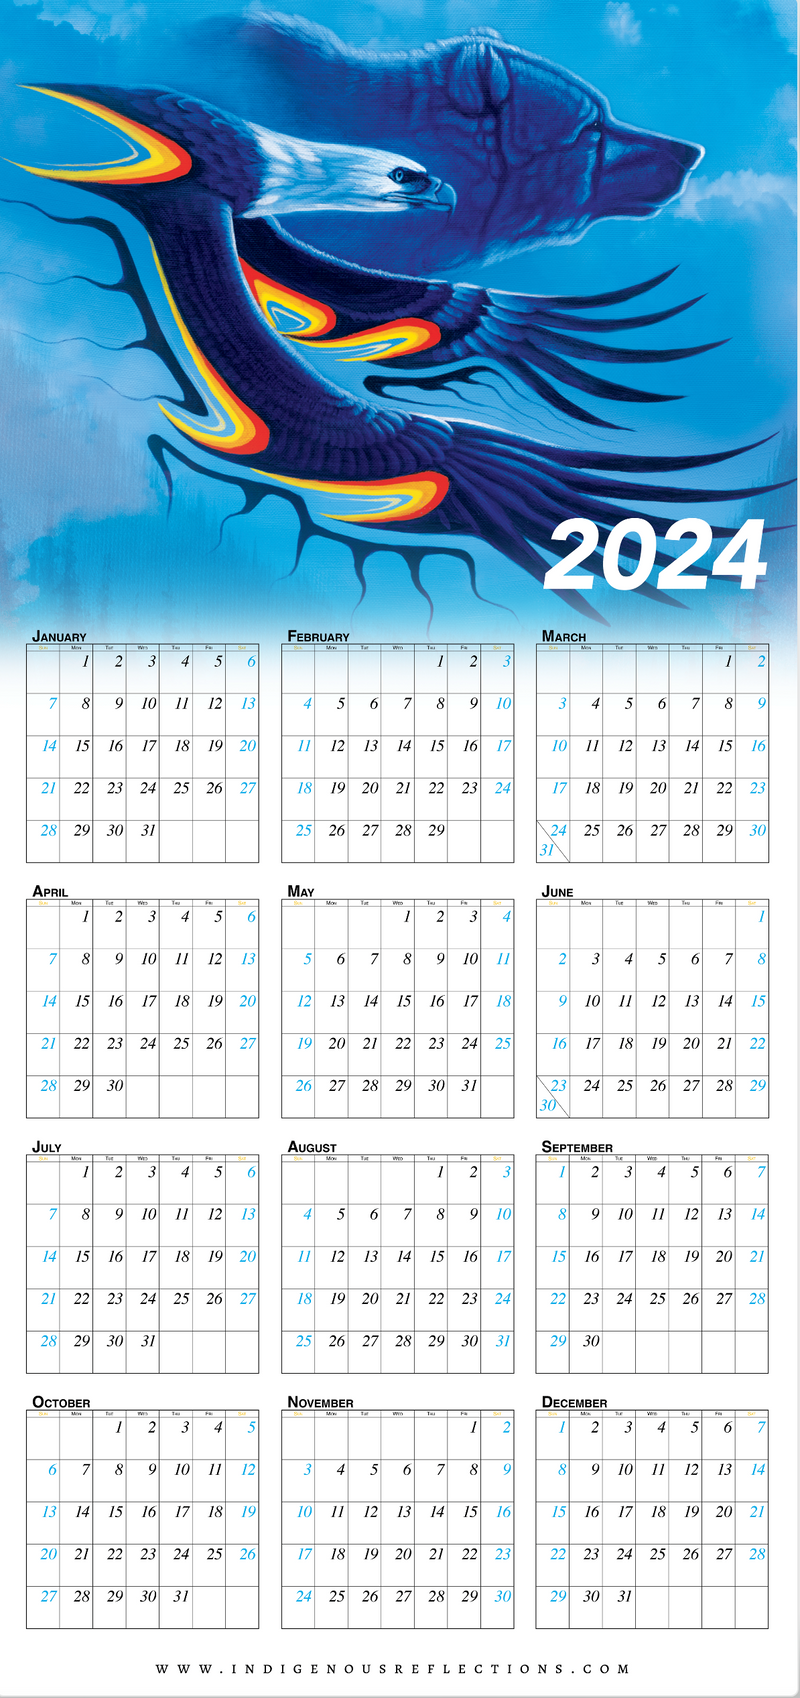 2024 Wipe-clean Calendar